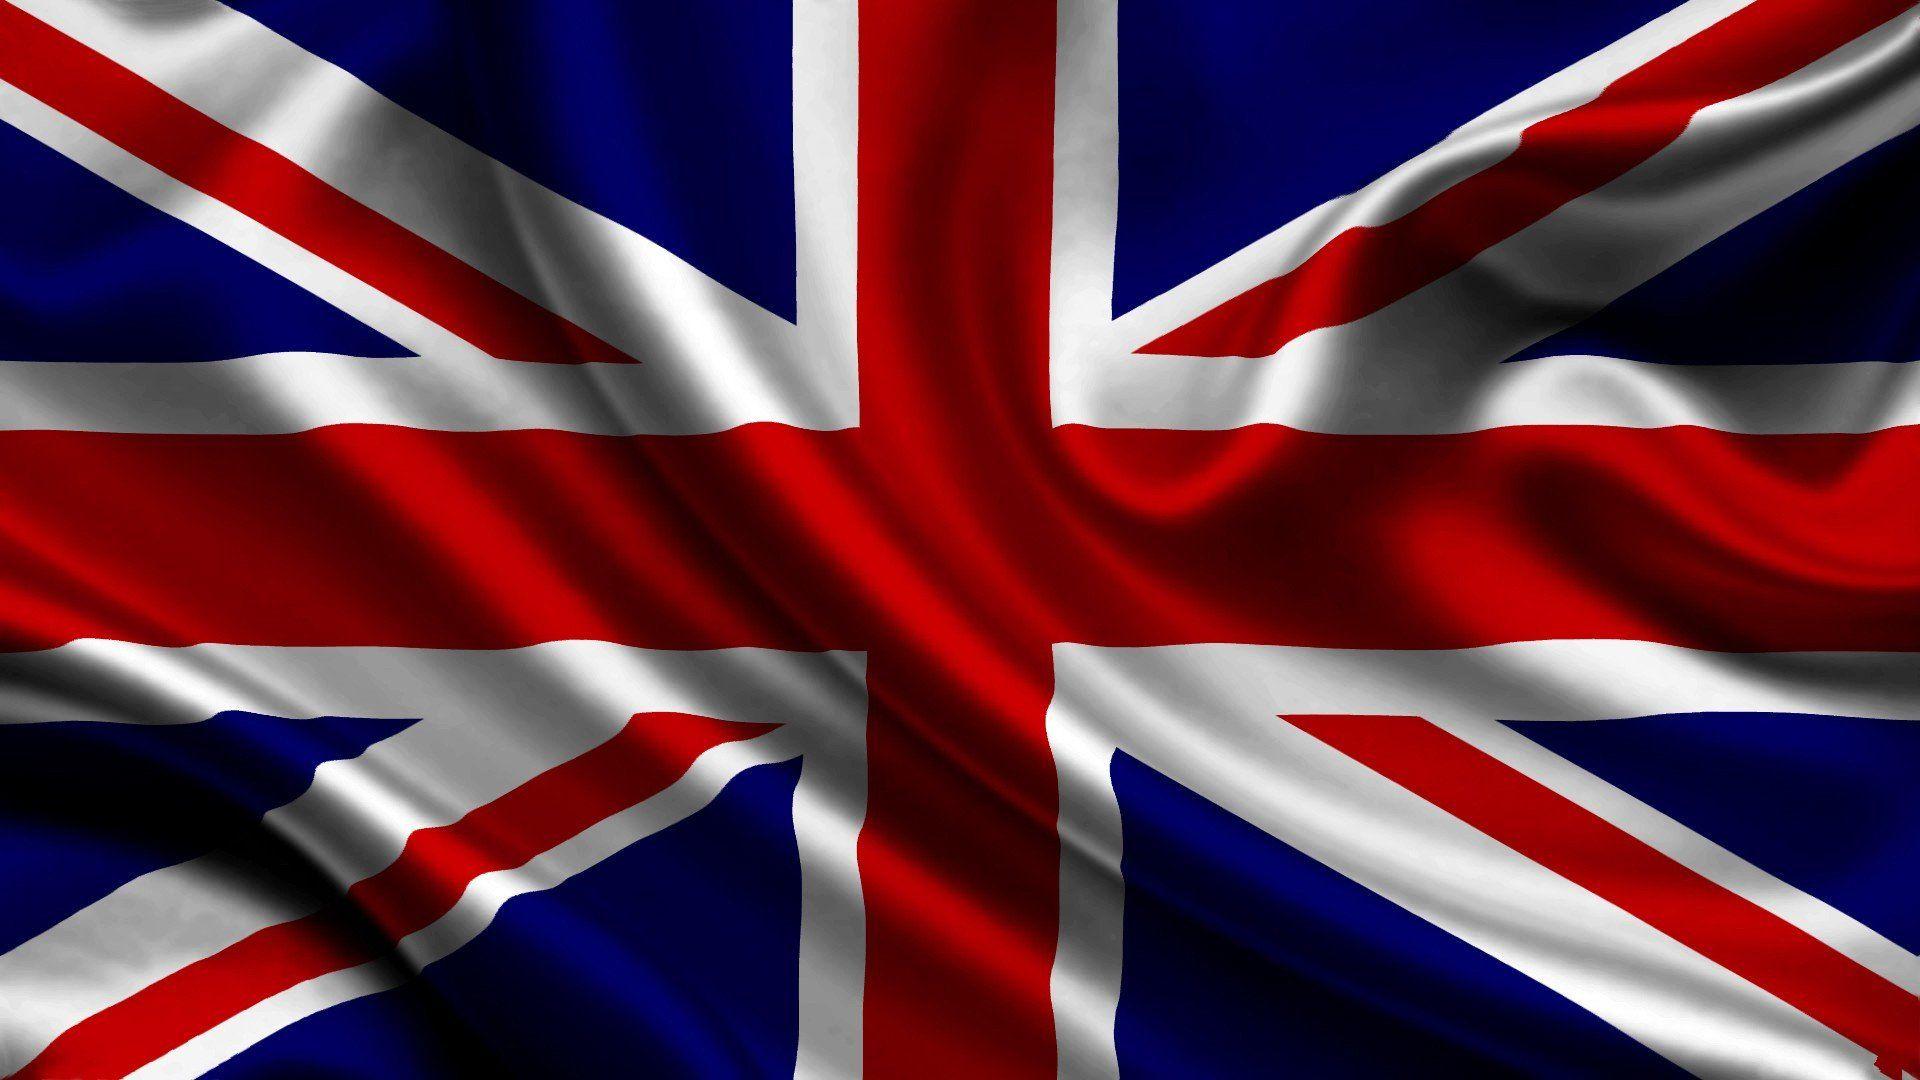 UK, Flag, Union Jack Wallpaper HD / Desktop and Mobile Background